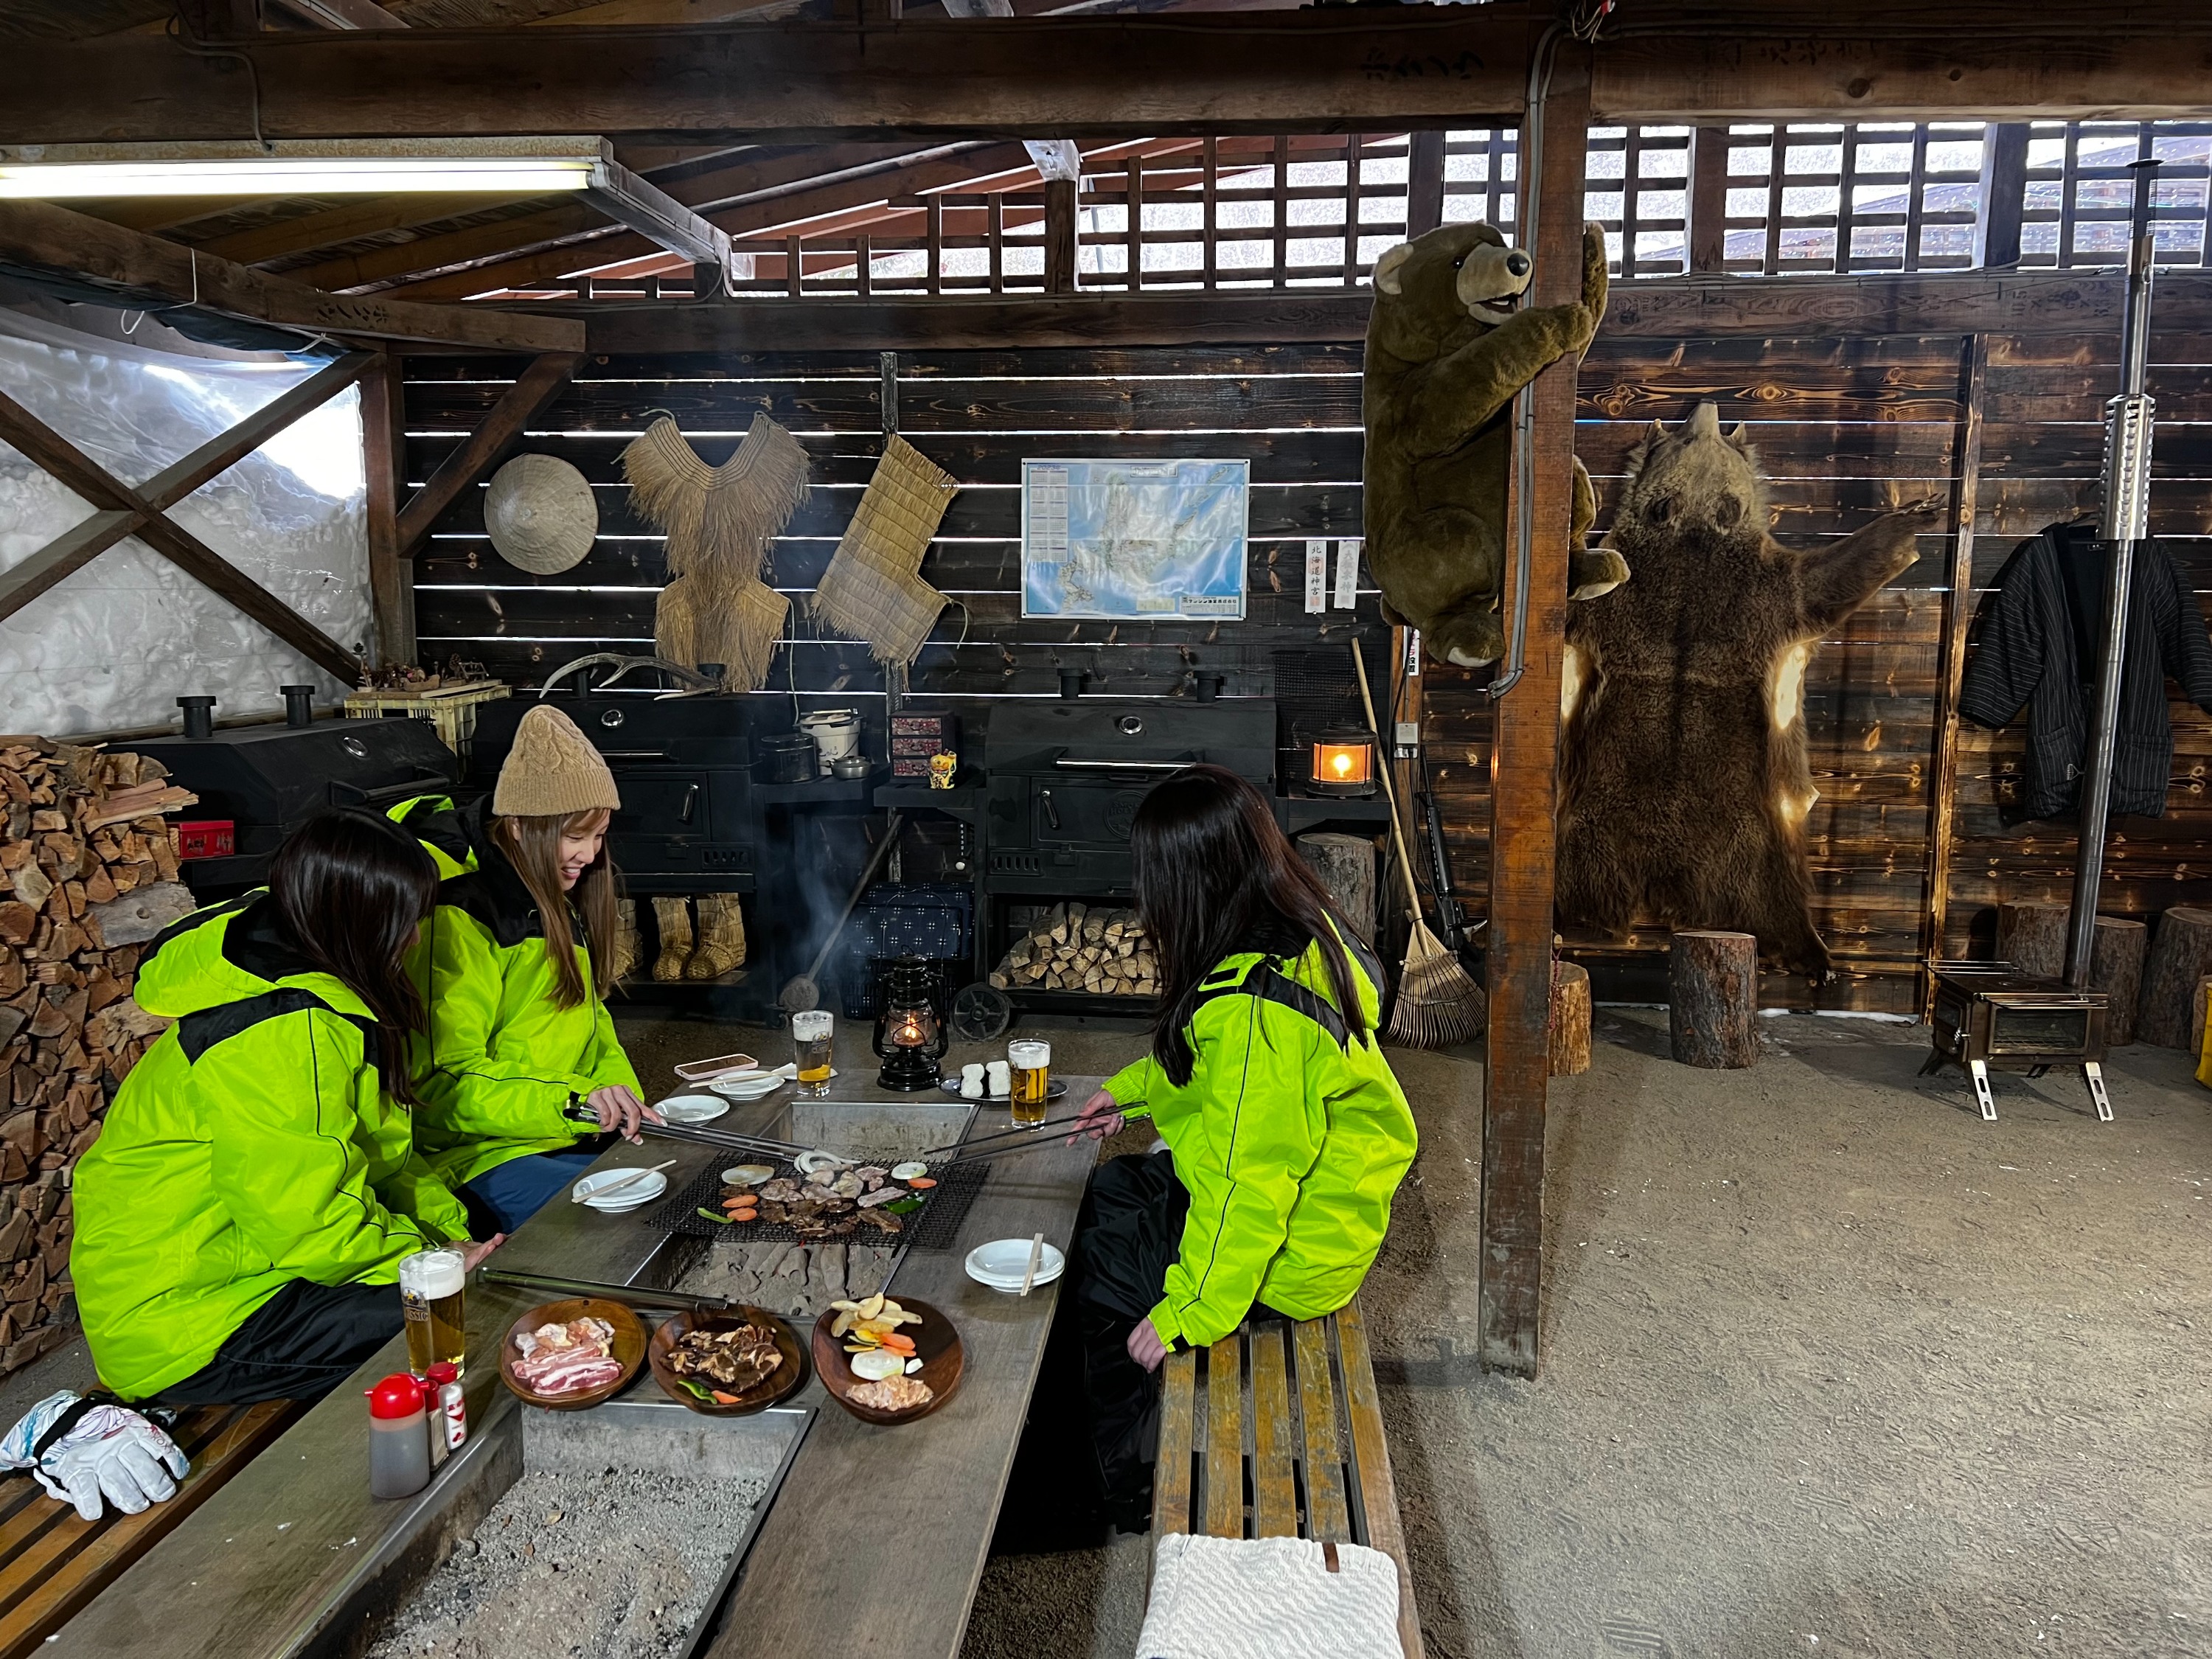 【Klook獨家】札幌雪地摩托&滑雪公園&BBQ玩樂一日體驗